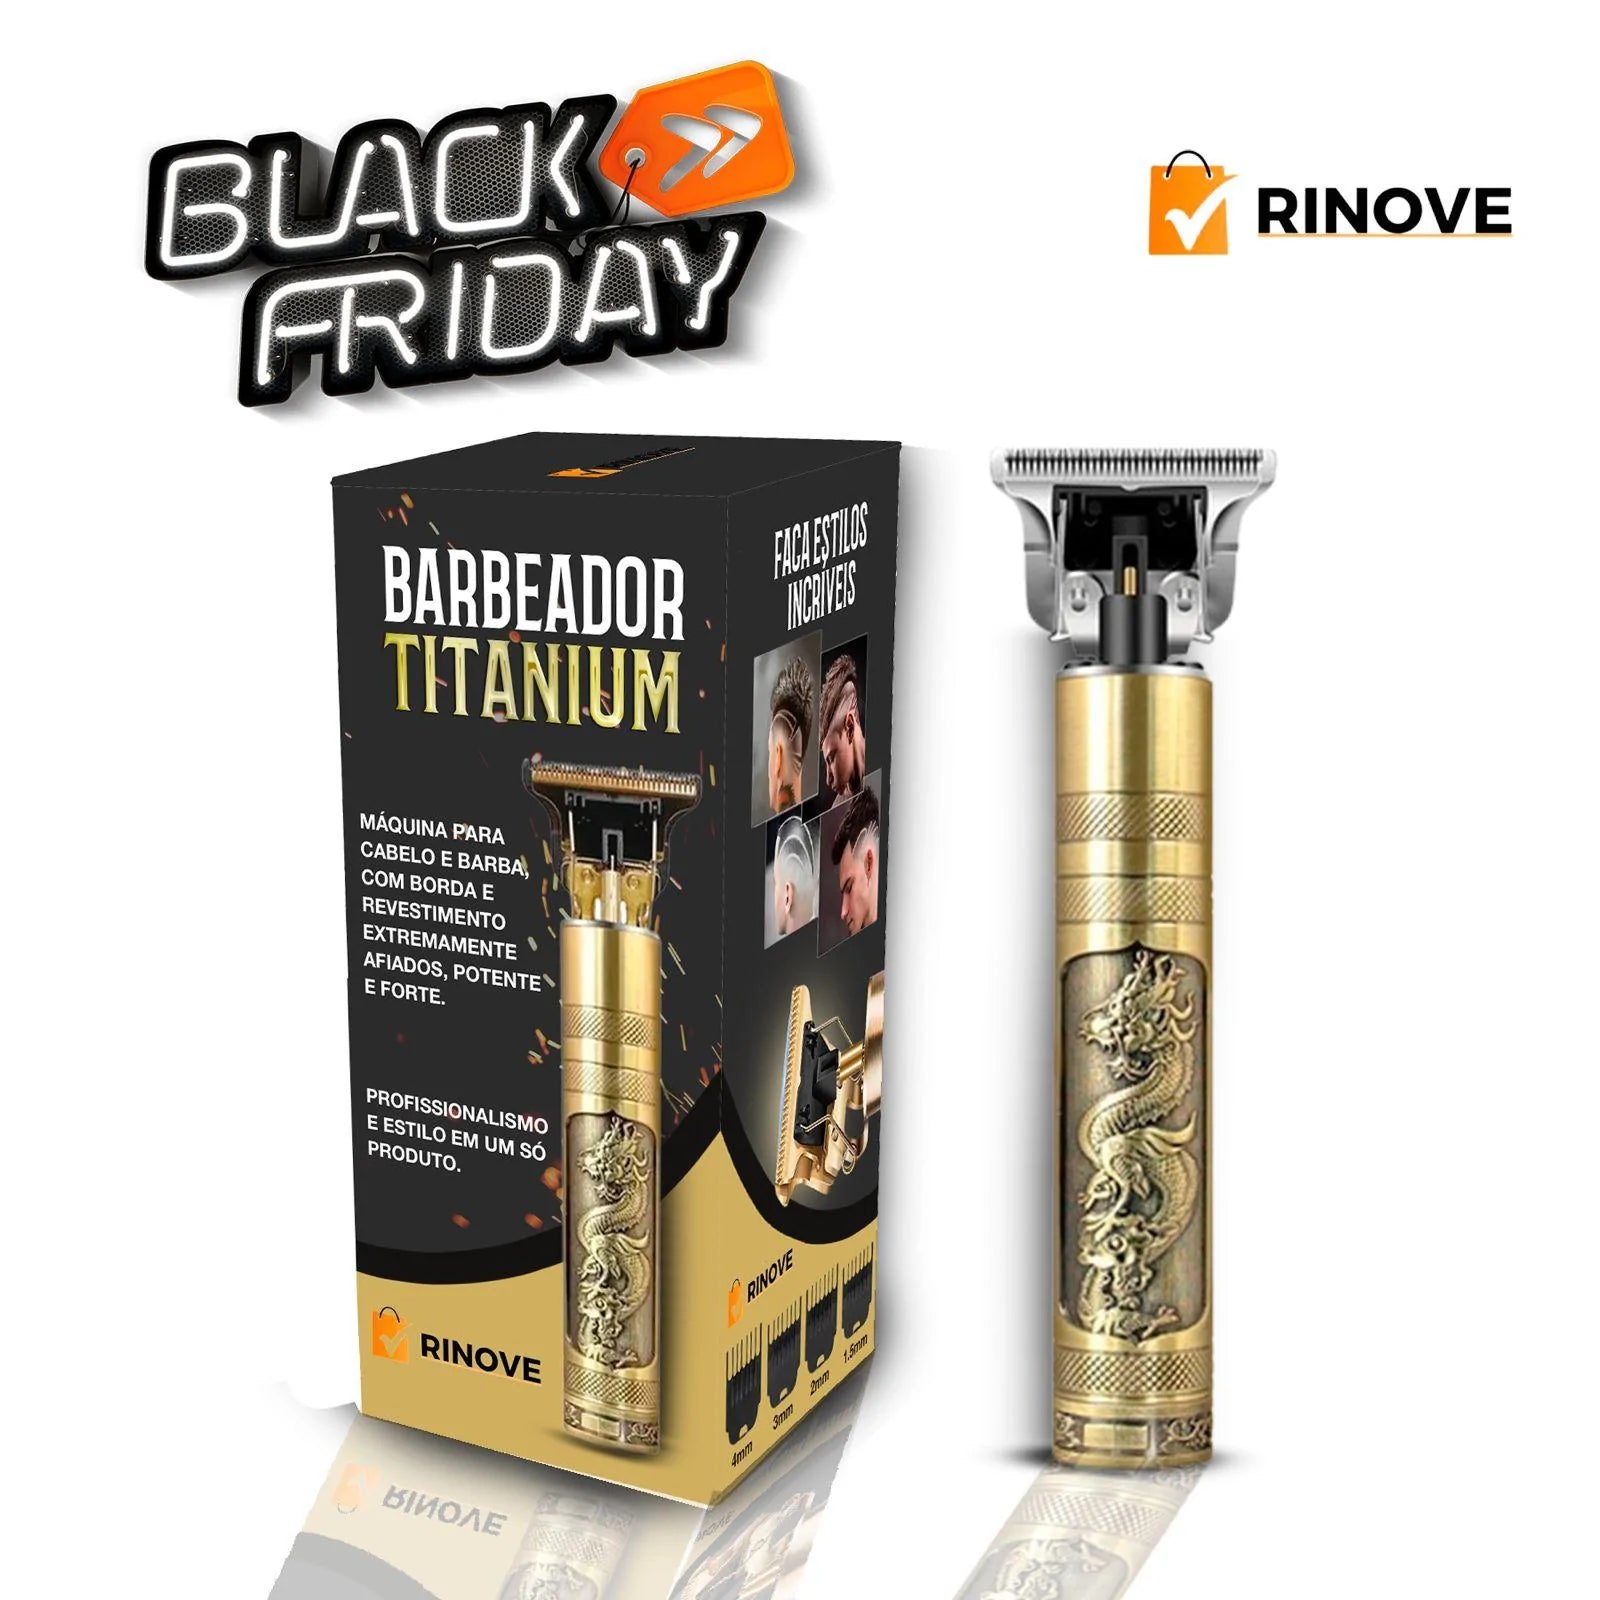 Barbeador Masculino Titanium© com 4 Pentes + BRINDE (2.0) - Rinove Store